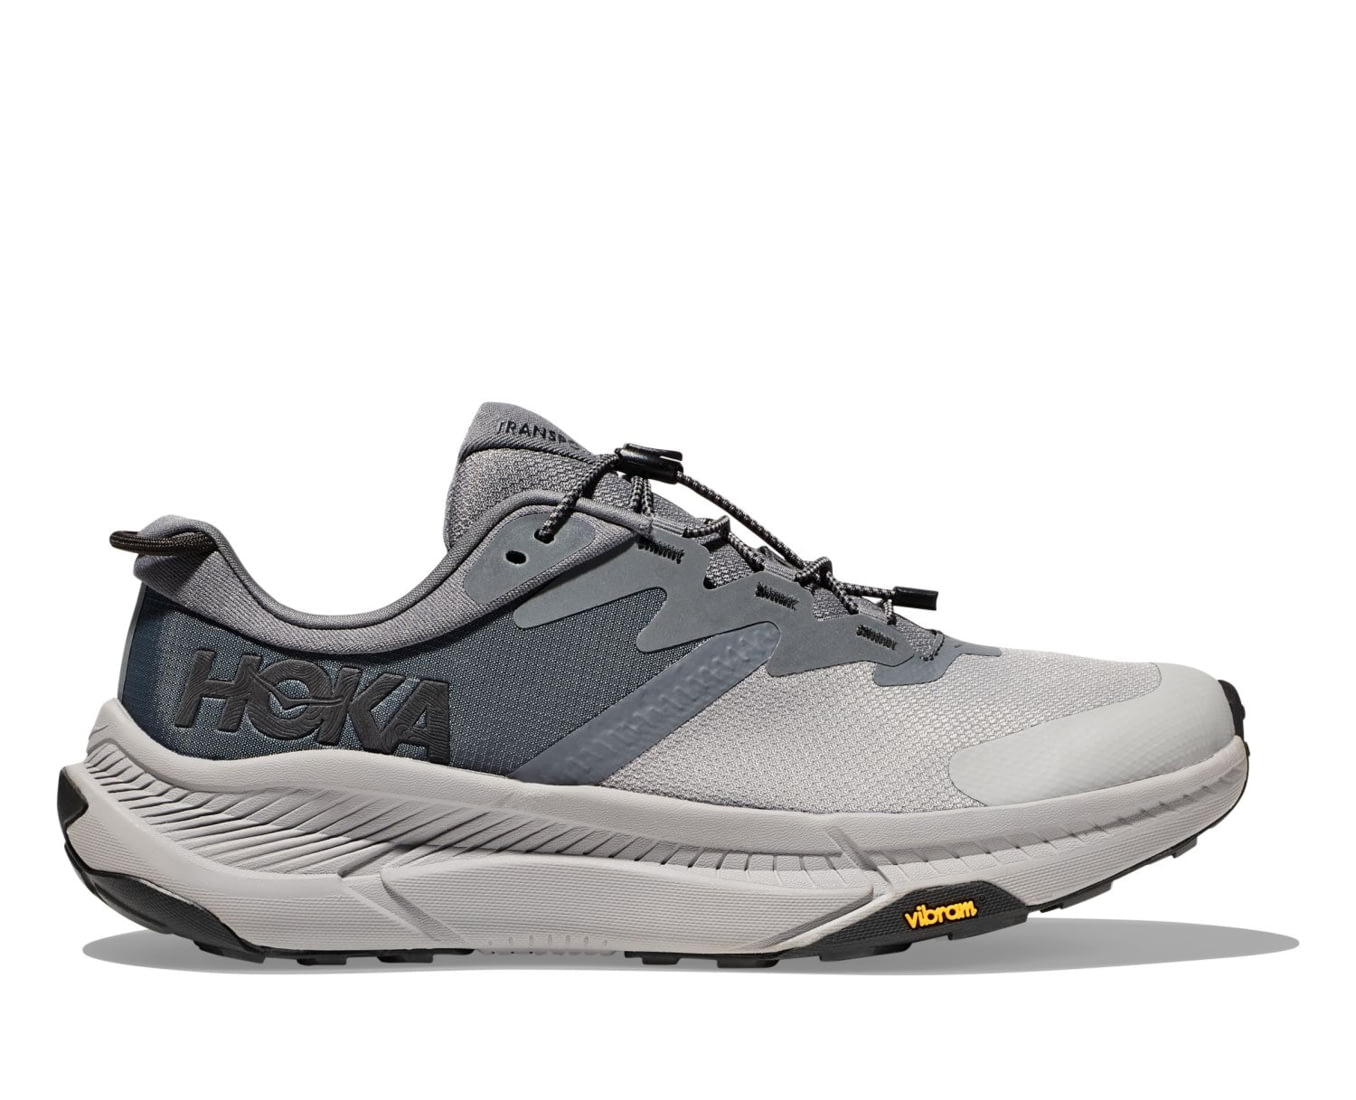 Hoka Transport Hiking Shoes - Men's, White/White, 12D, — Mens Shoe Size ...